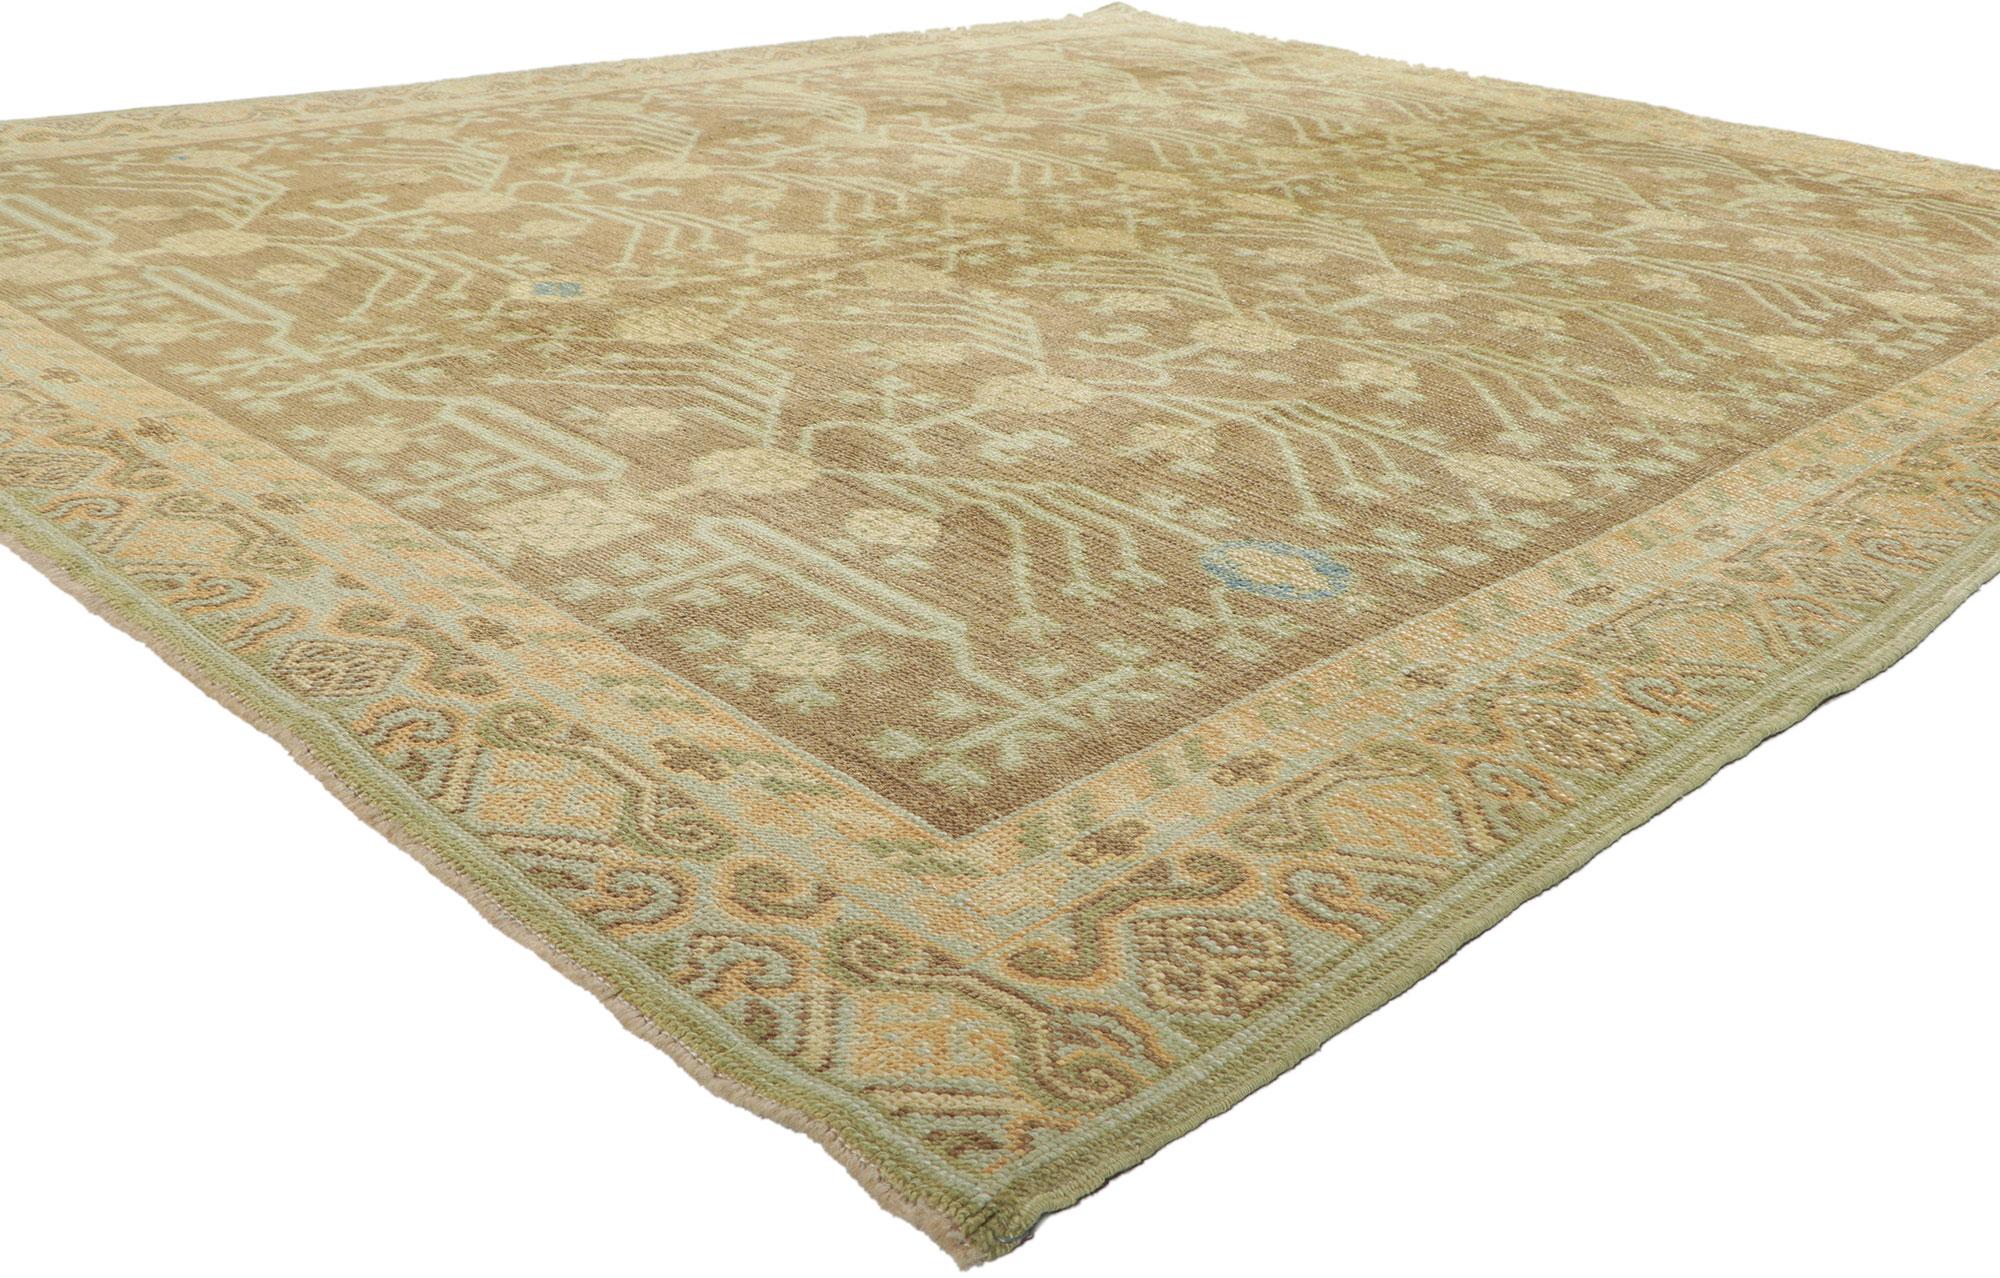 51627 New Earth-Tone Turkish Khotan Rug 08'02 x 09'09.
Dieser türkische Khotan-Teppich aus handgeknüpfter Wolle besticht durch seinen zeitlosen Stil und seine unglaubliche Detailtreue und Textur und ist eine fesselnde Vision gewebter Schönheit. Das